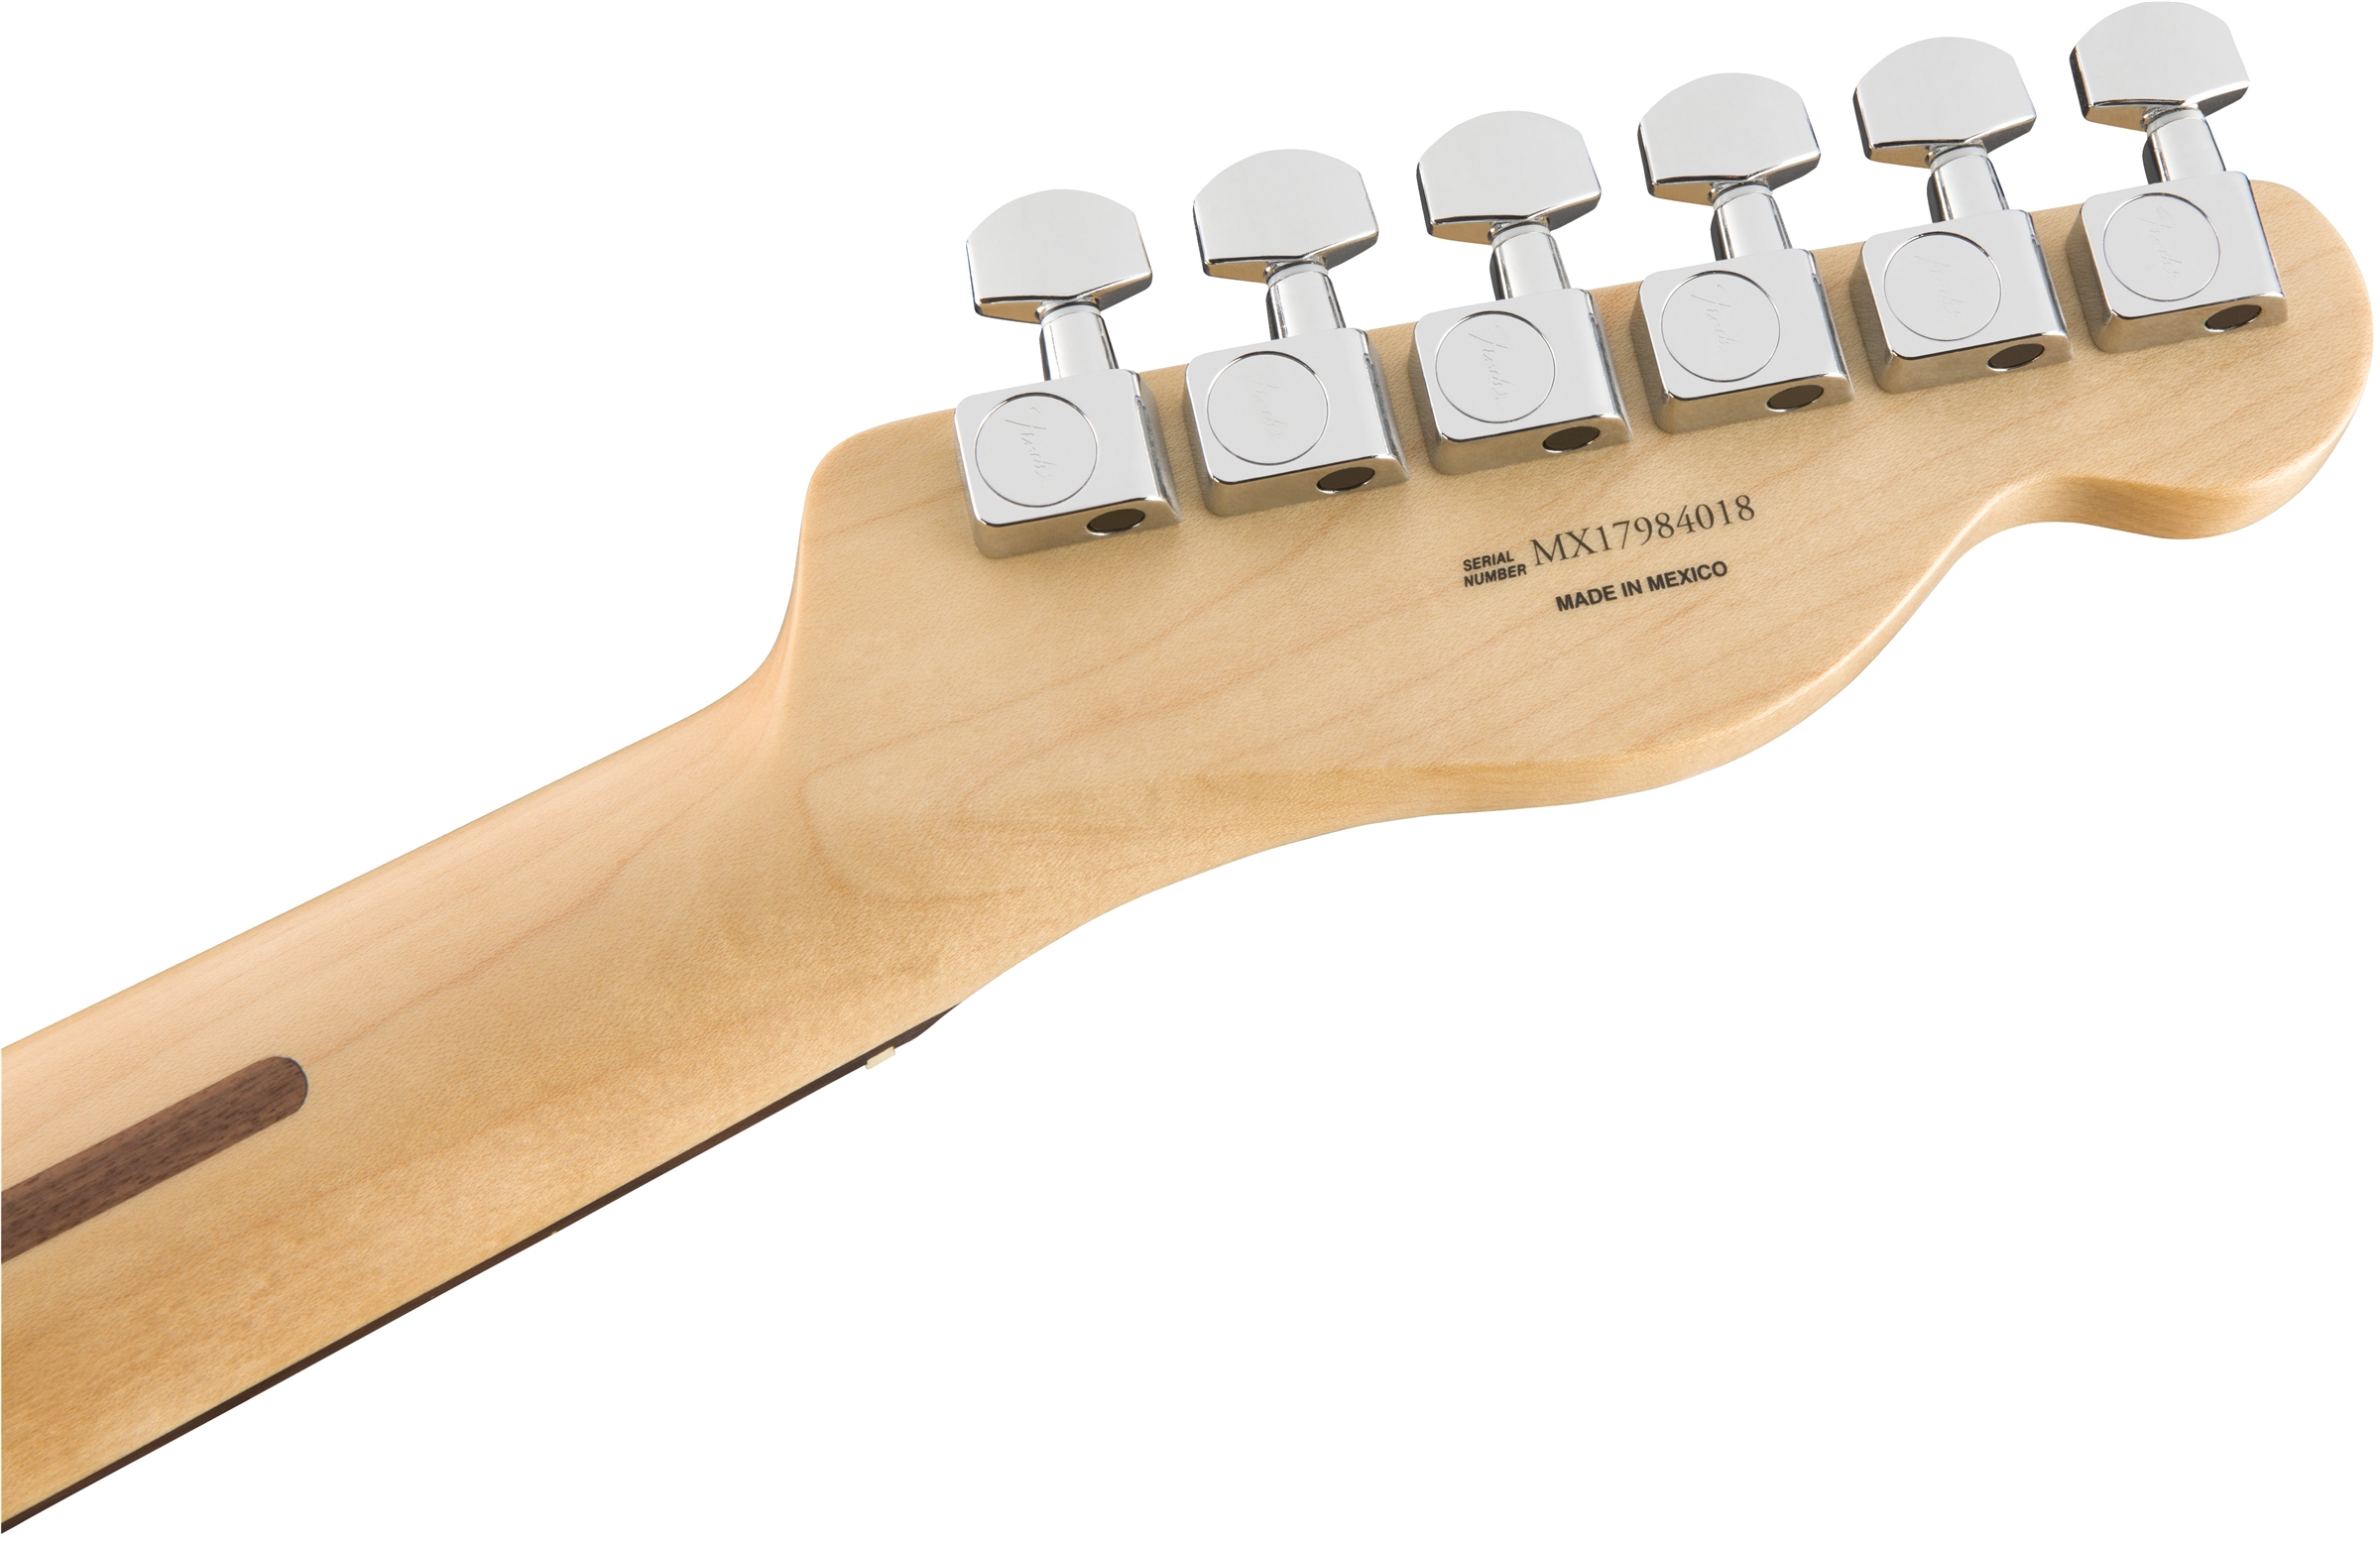 Fender Tele Player Lh Gaucher Mex Ss Pf - Polar White - Linkshandige elektrische gitaar - Variation 5